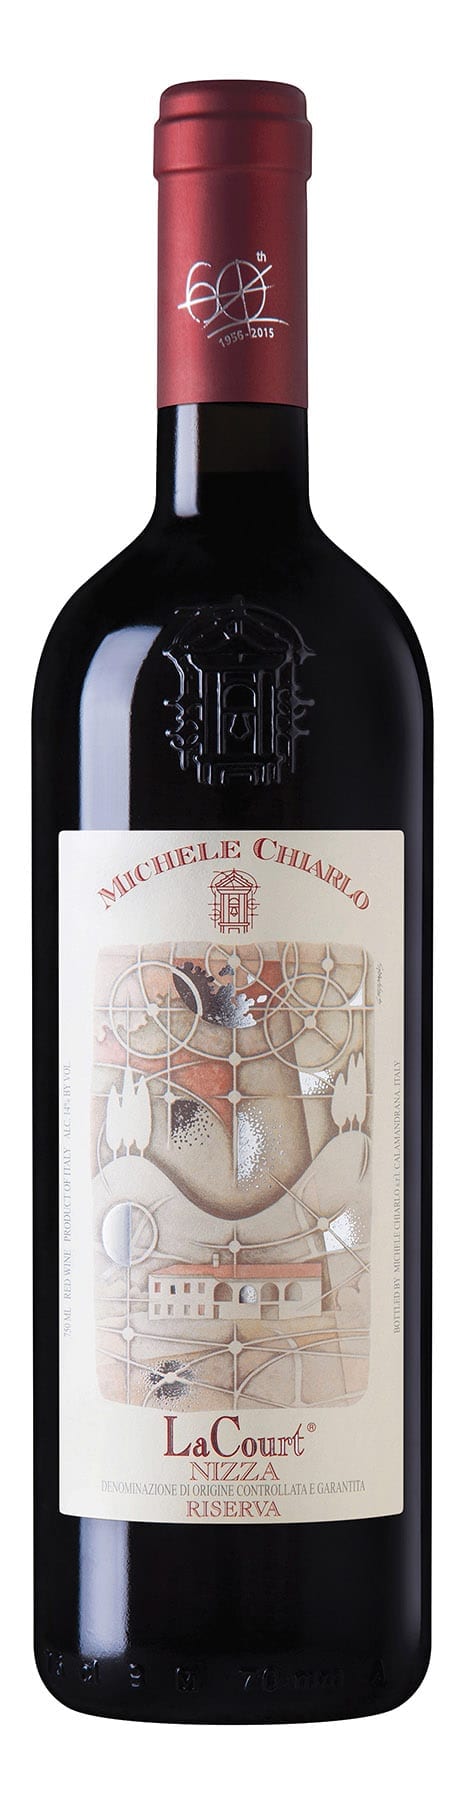 Red wine bottle, Barbera Nizza, Michele Chiarlo, Italian, Piedmont